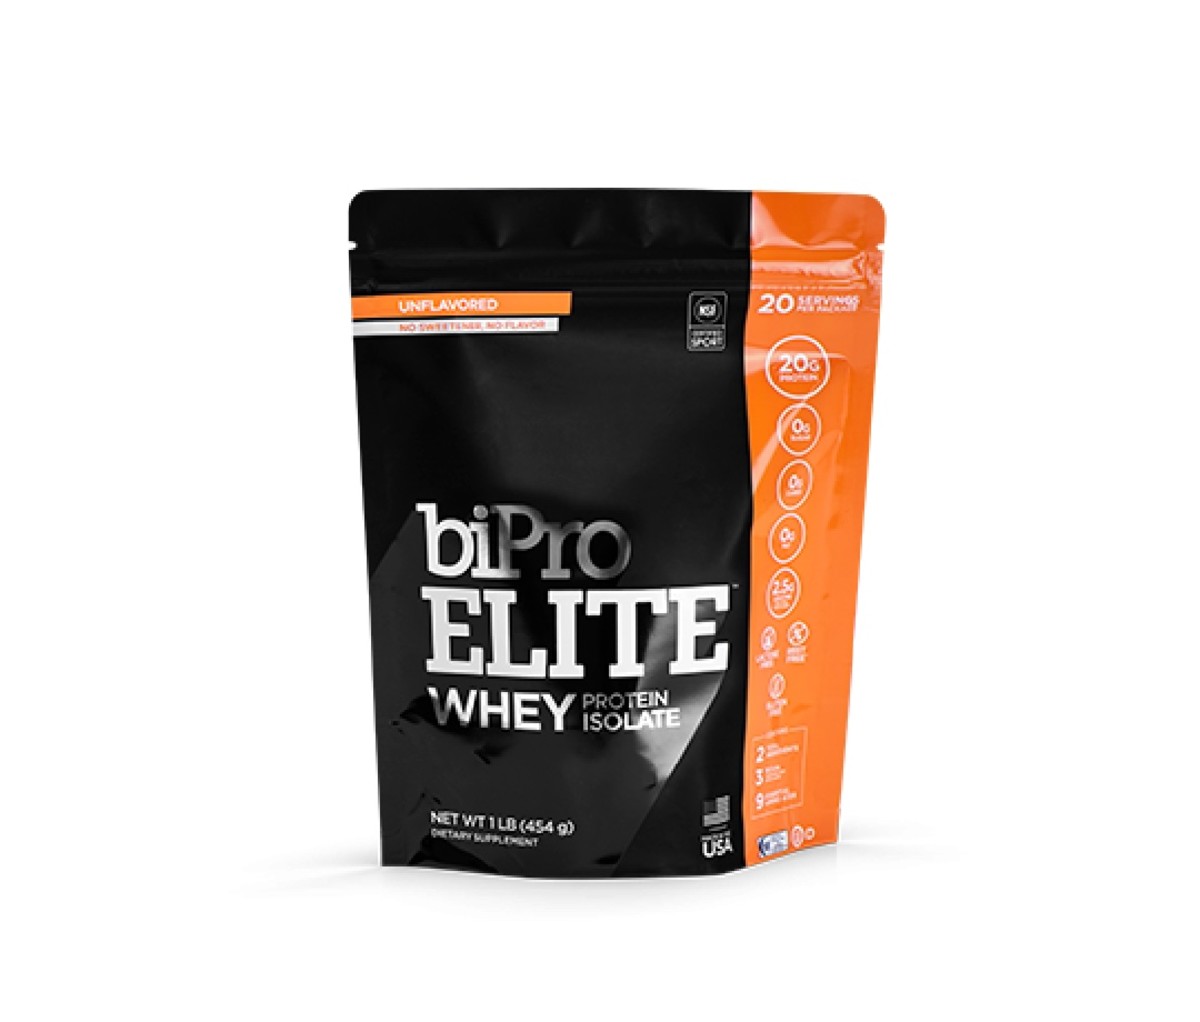 Bipro Elite Whey Protein